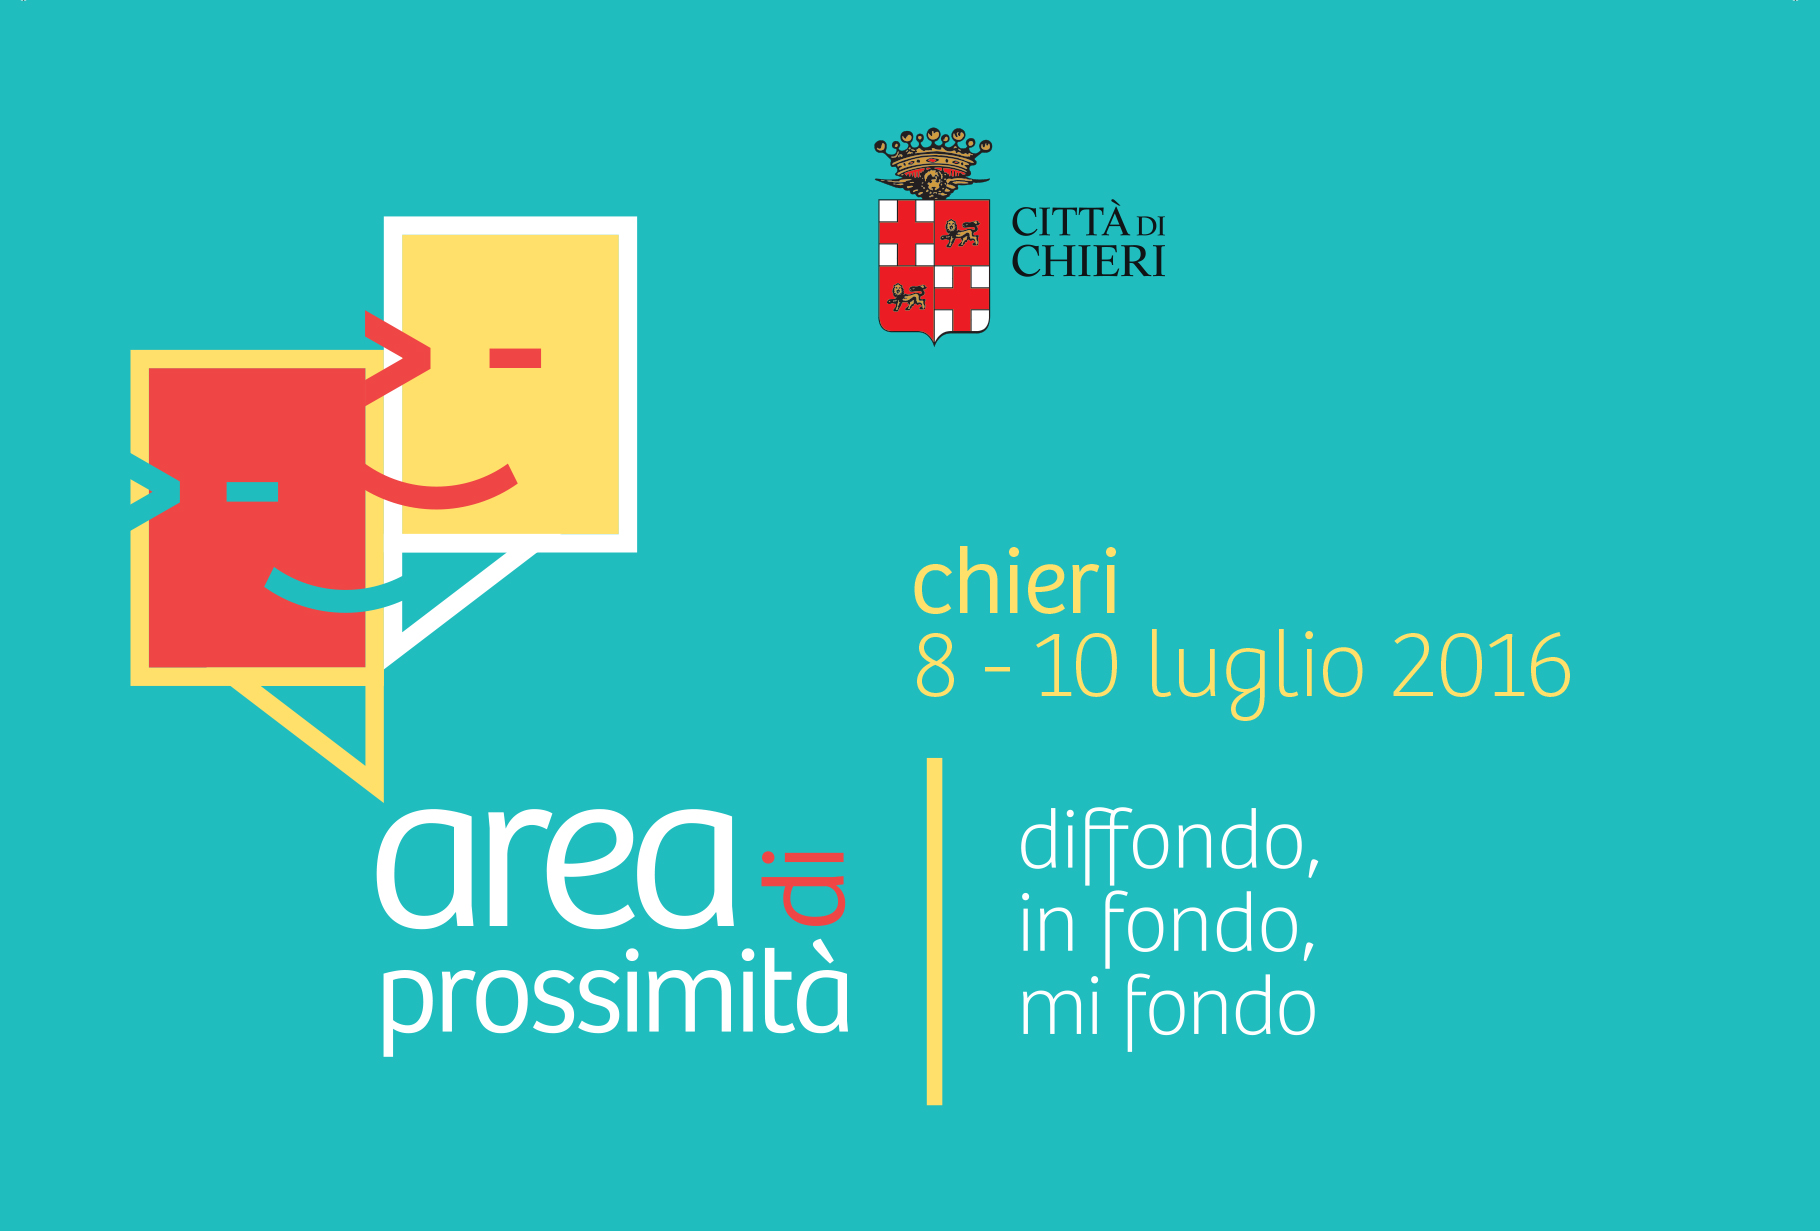 Area di Prossimità a Chieri dall’8 al 10 Luglio 2016